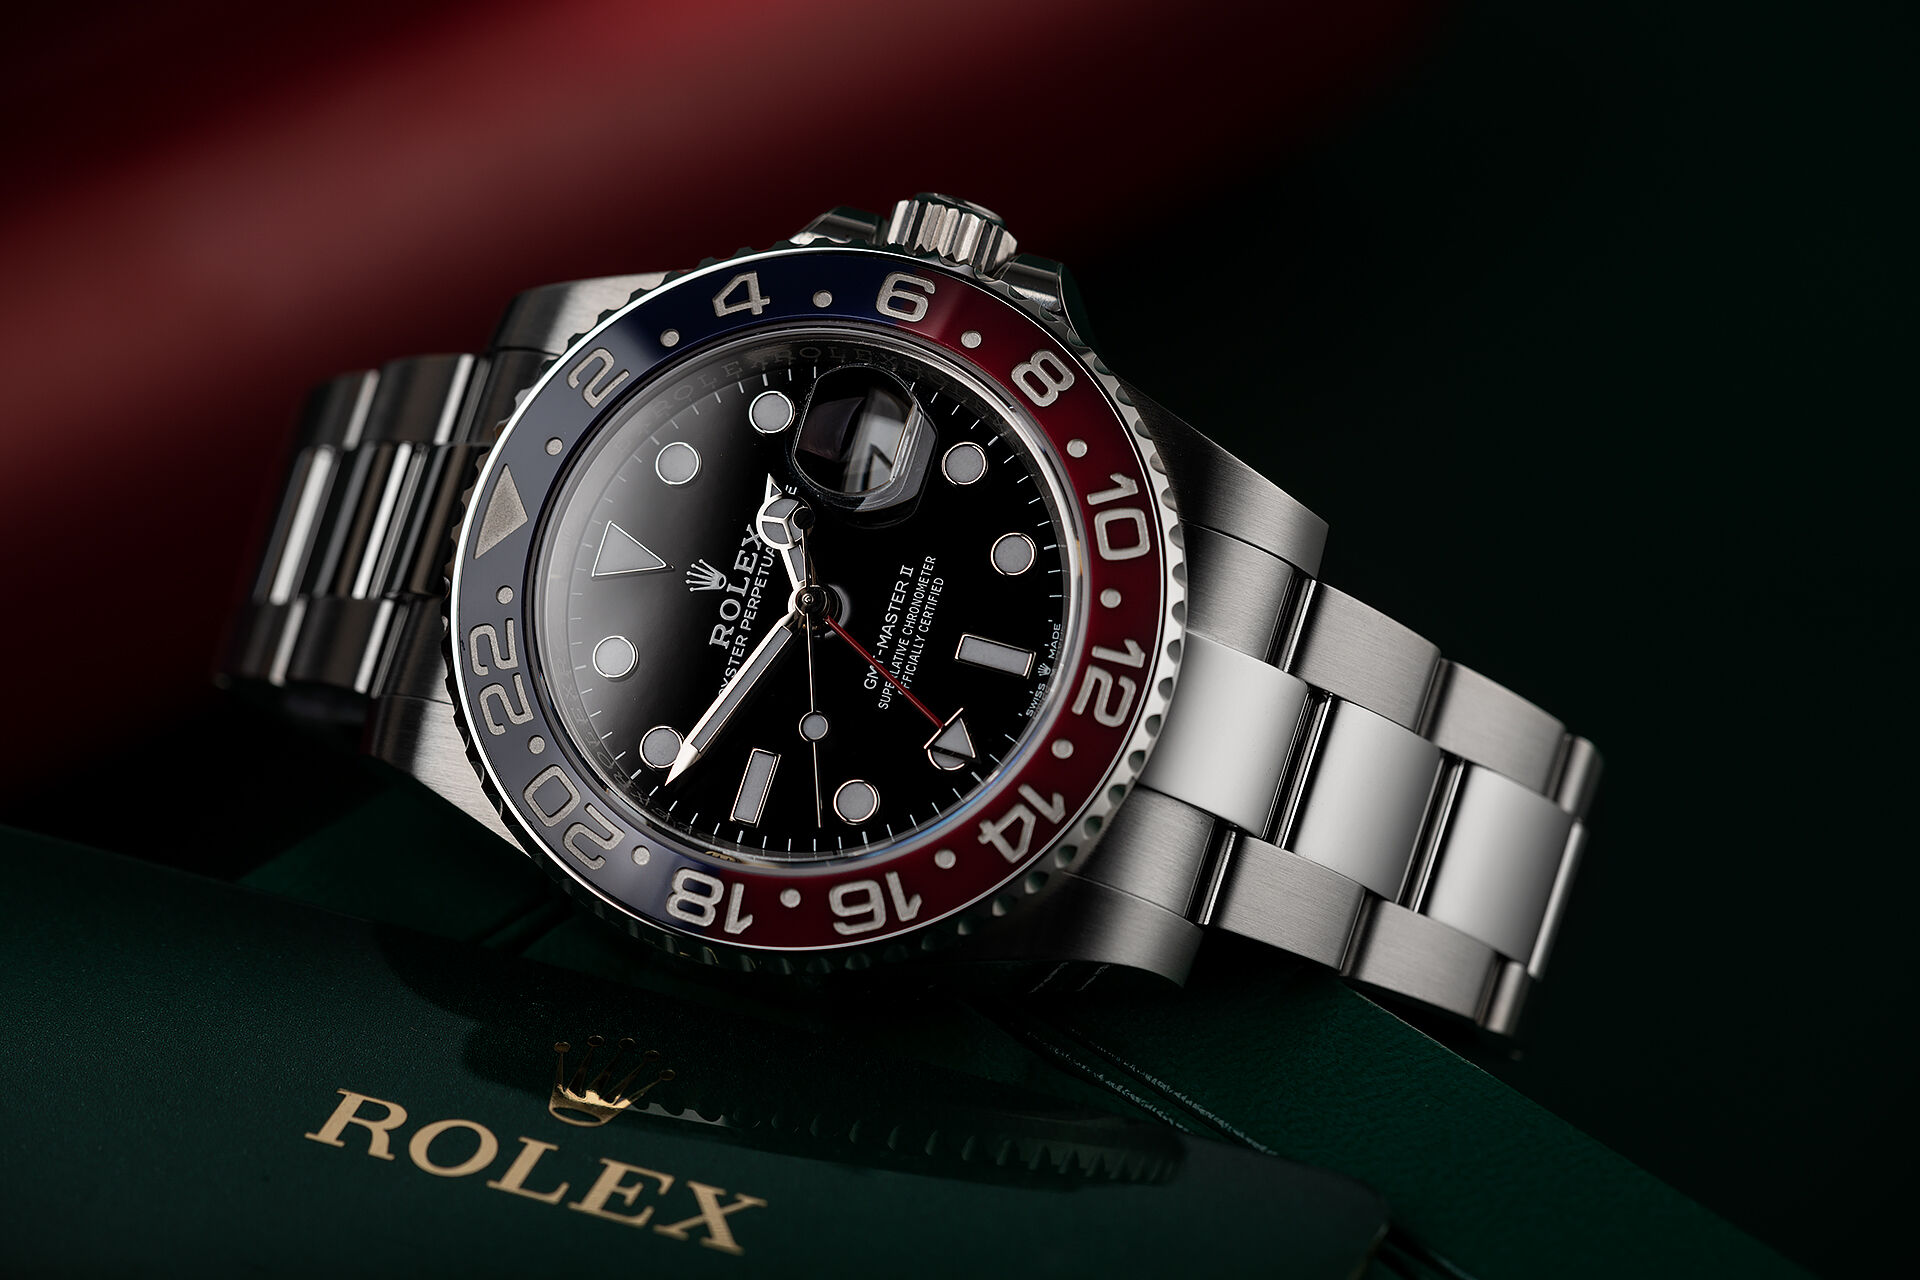 ref 126710BLRO | Rolex Warranty to 2026 | Rolex GMT-Master II